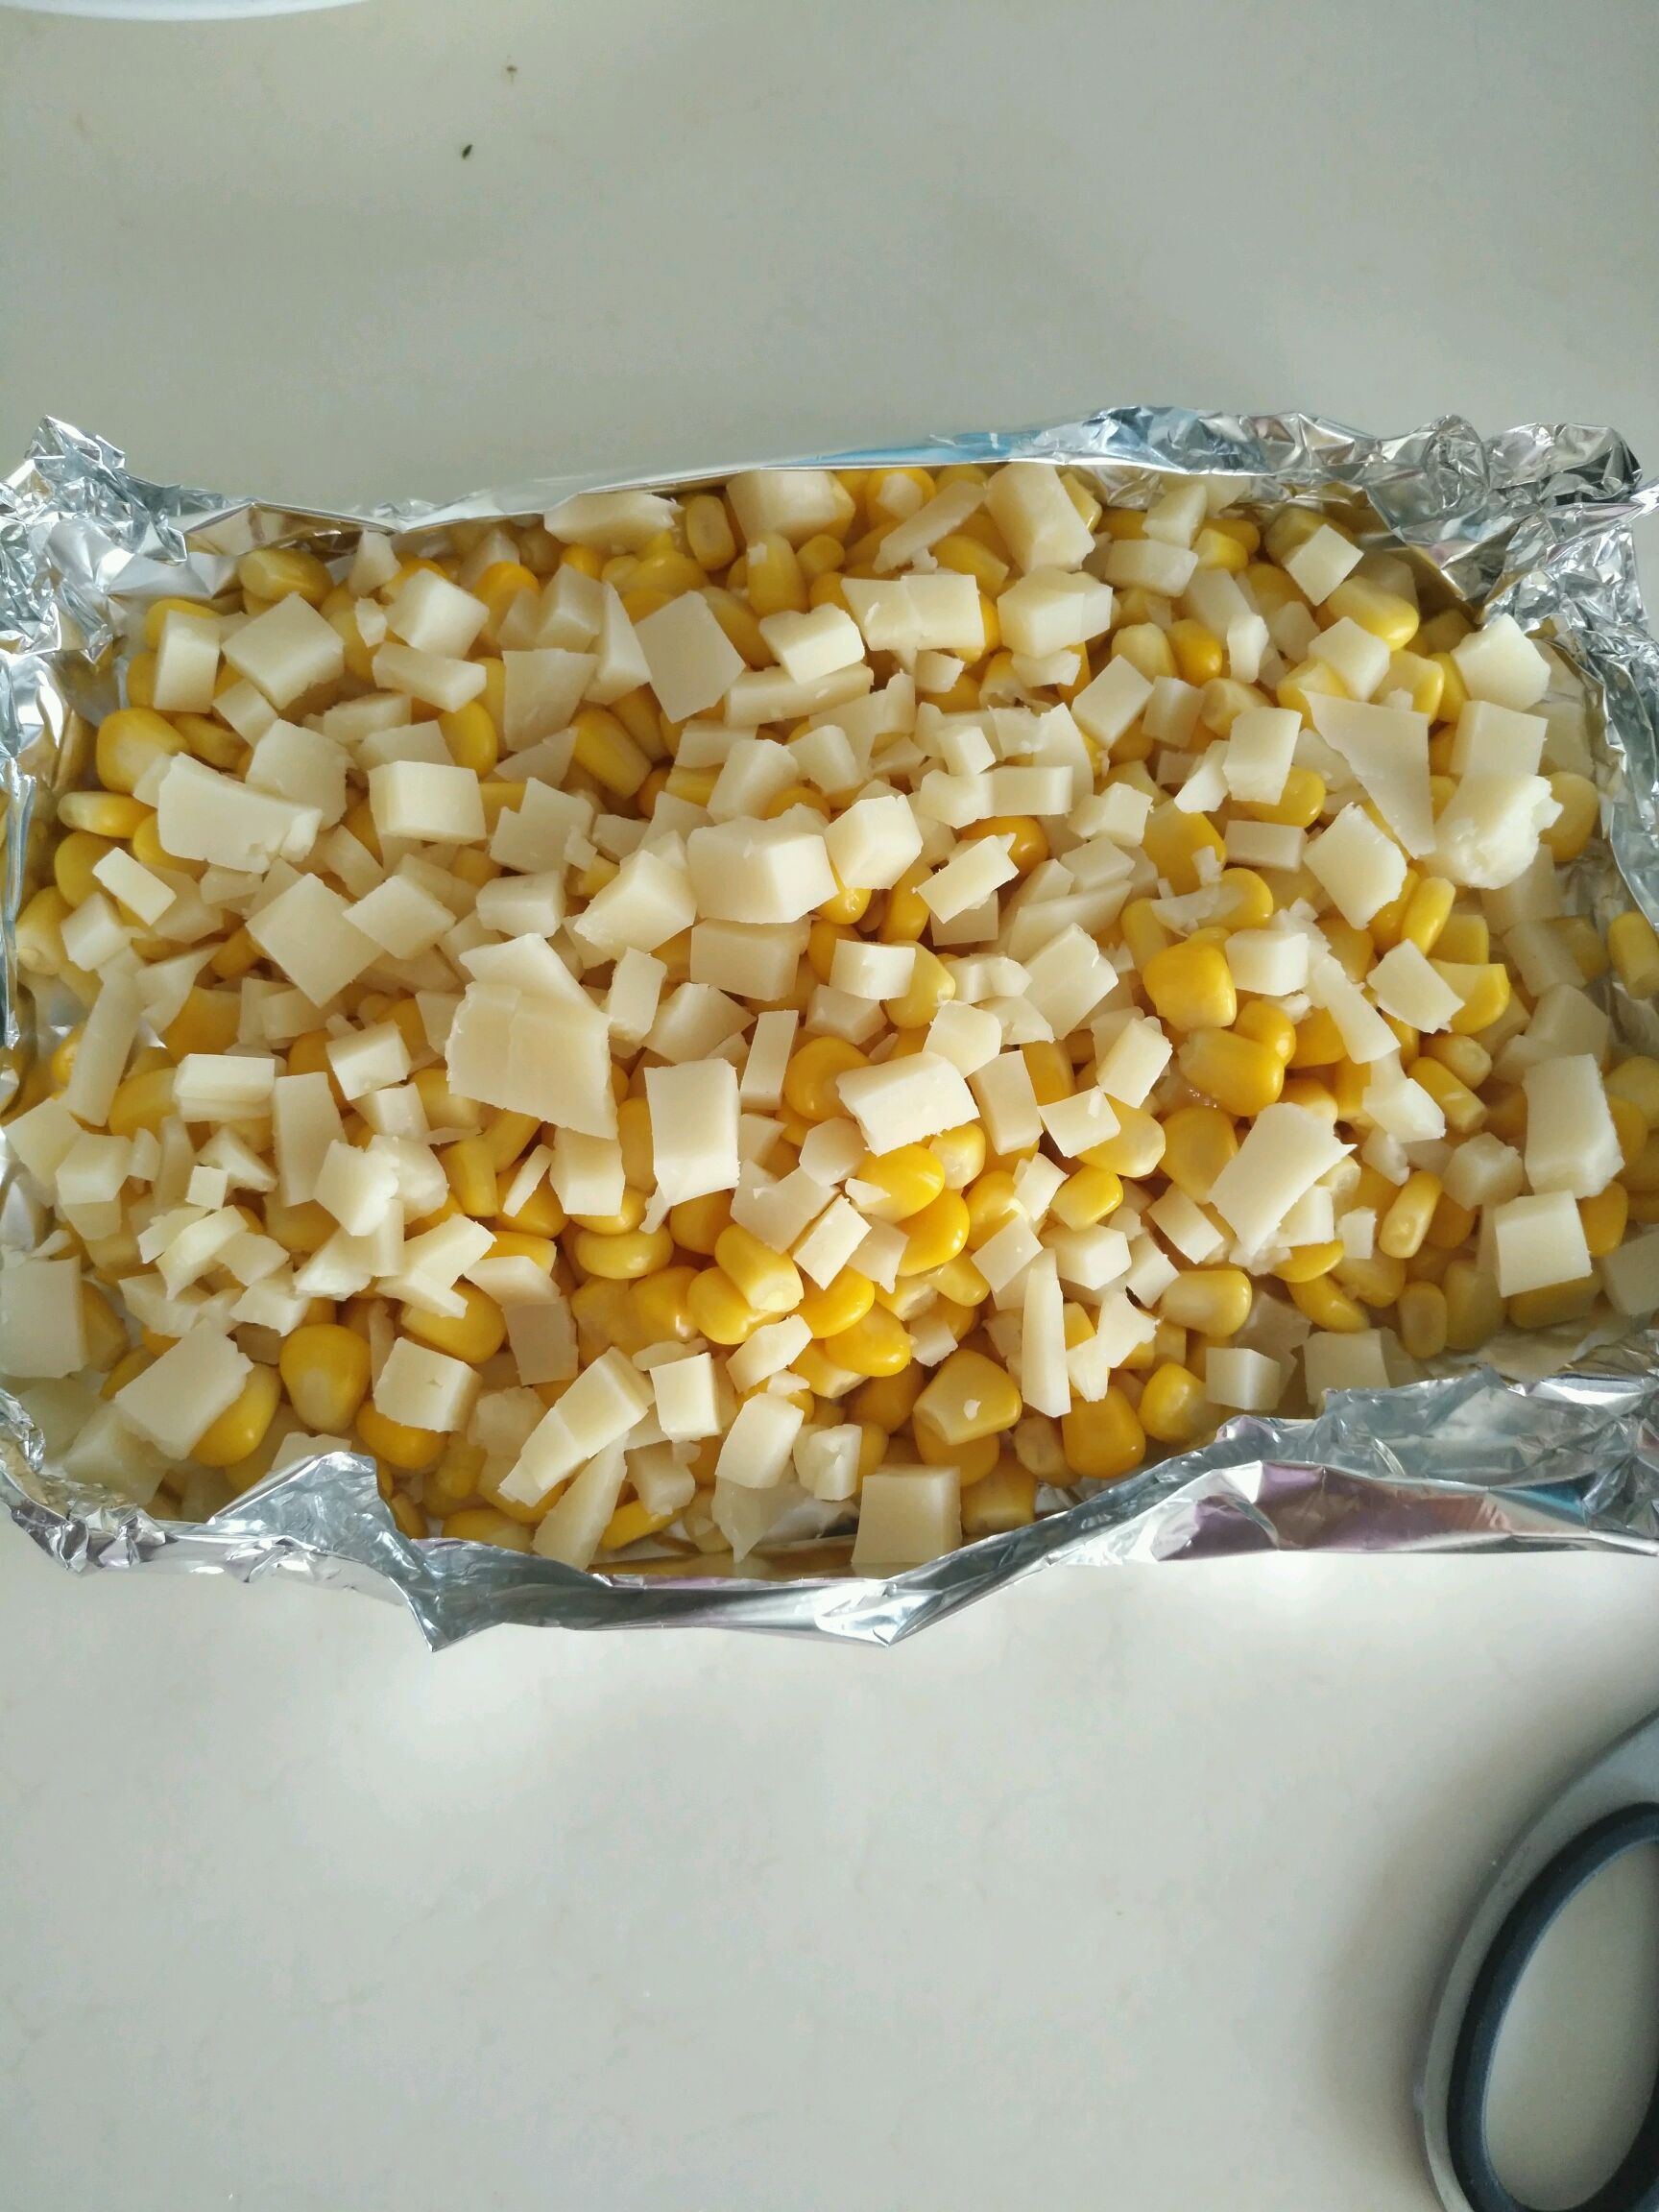 时蔬炒玉米粒,时蔬炒玉米粒的家常做法 - 美食杰时蔬炒玉米粒做法大全